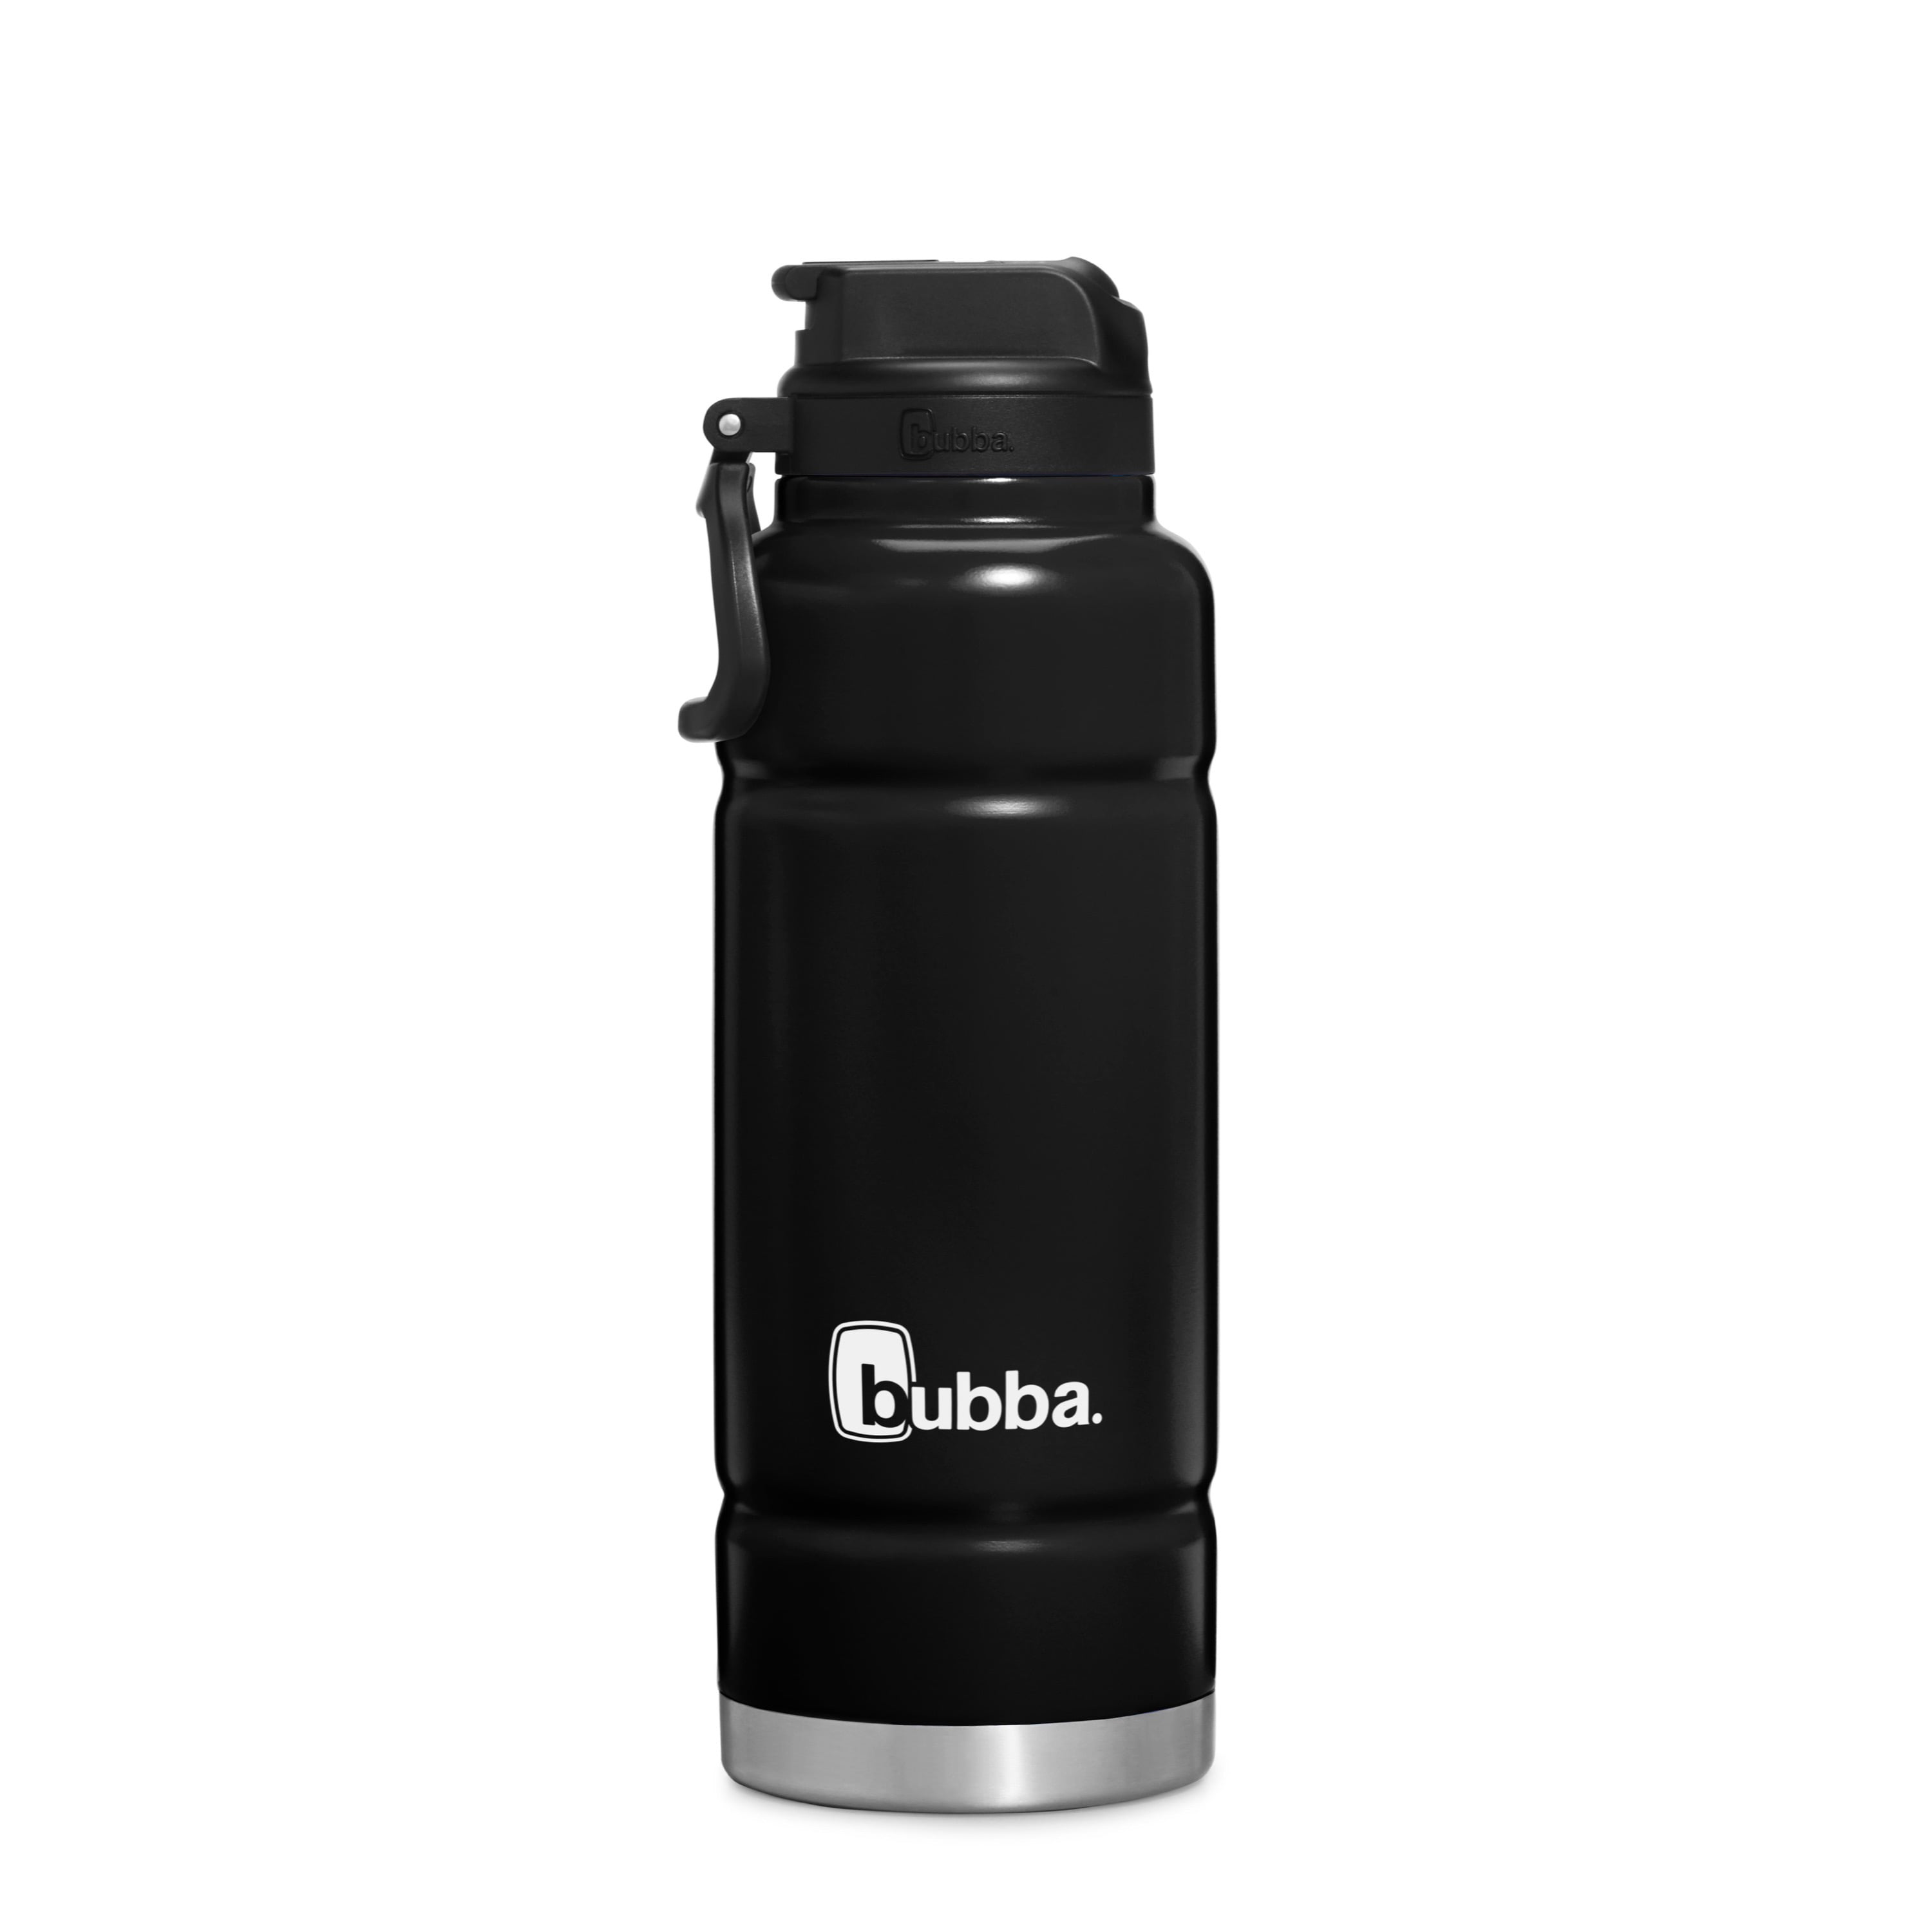 bubba water bottle walmart